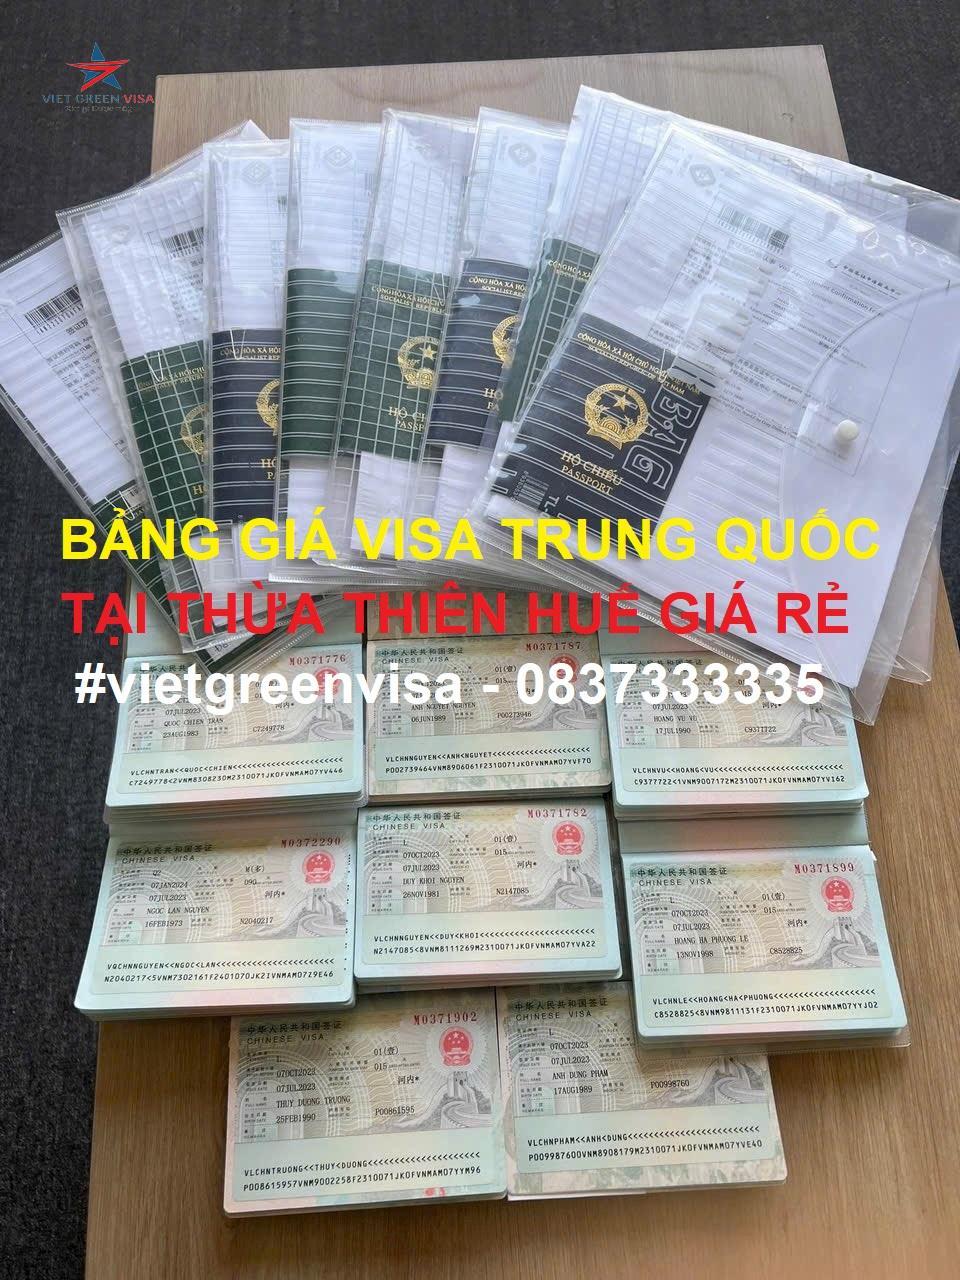   Dịch vụ xin visa Trung Quốc tại Huế, xin visa Trung Quốc tại Huế, Visa Trung Quốc, Viet Green Visa, Du Lịch Xanh